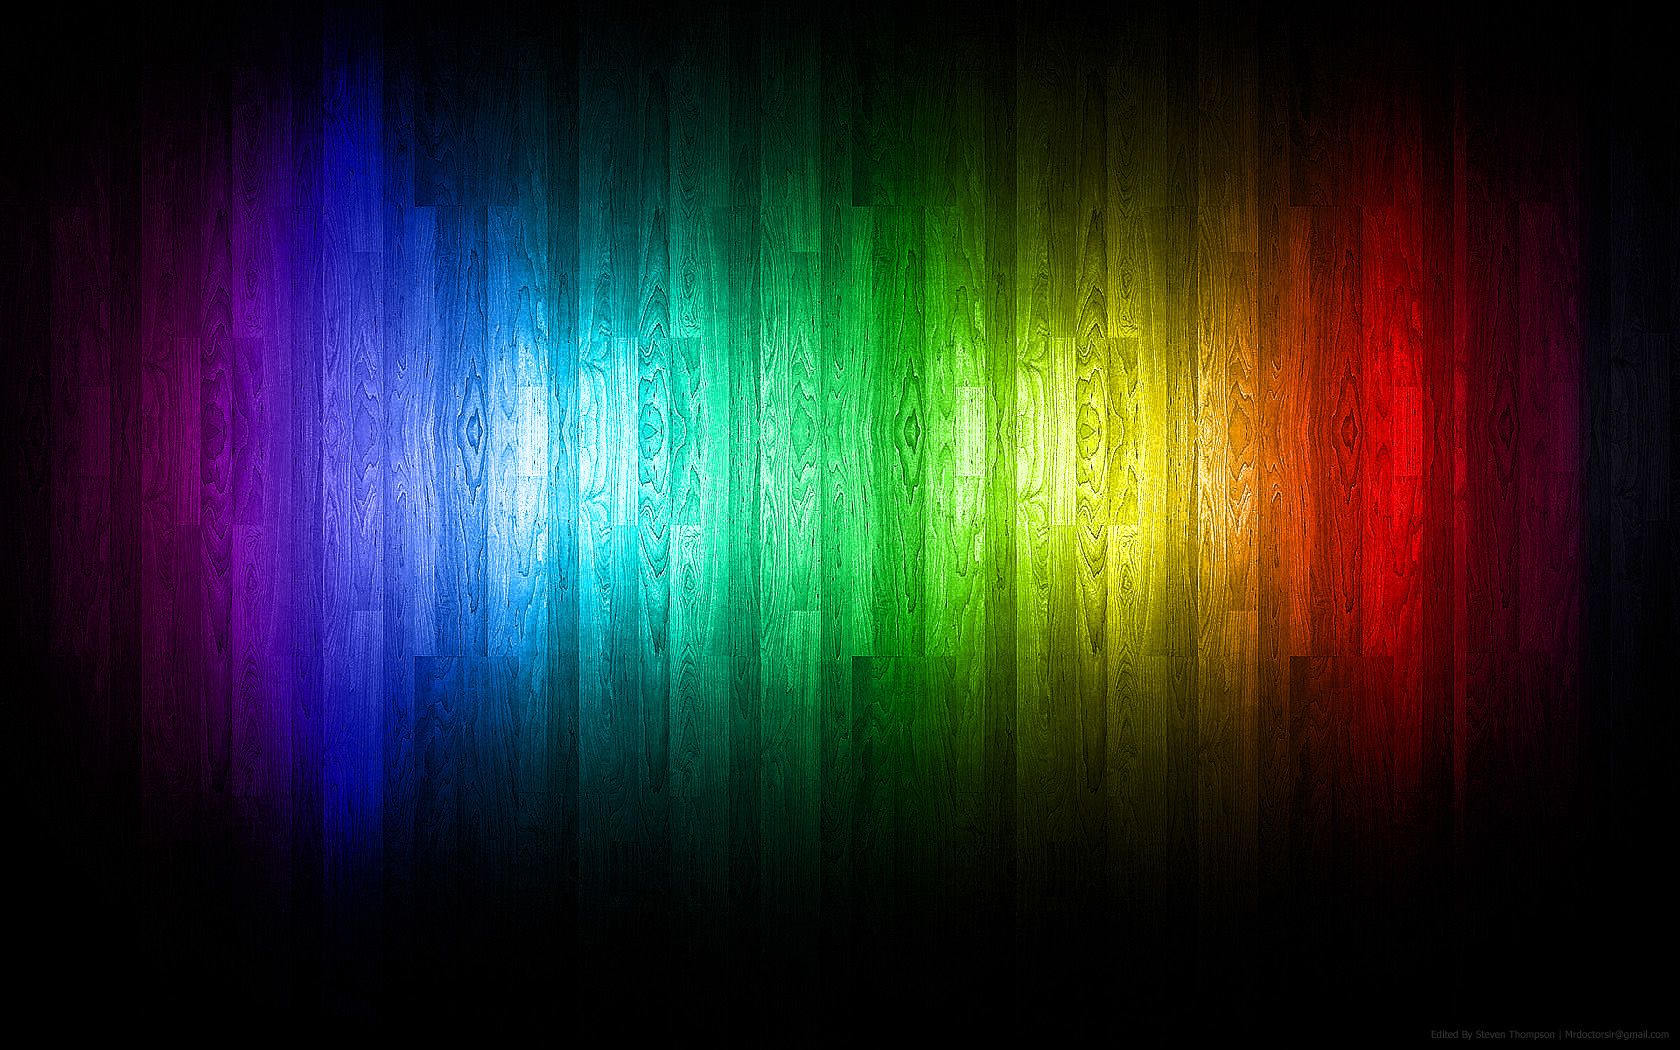 spektrum wallpaper,blau,grün,schwarz,licht,buntheit